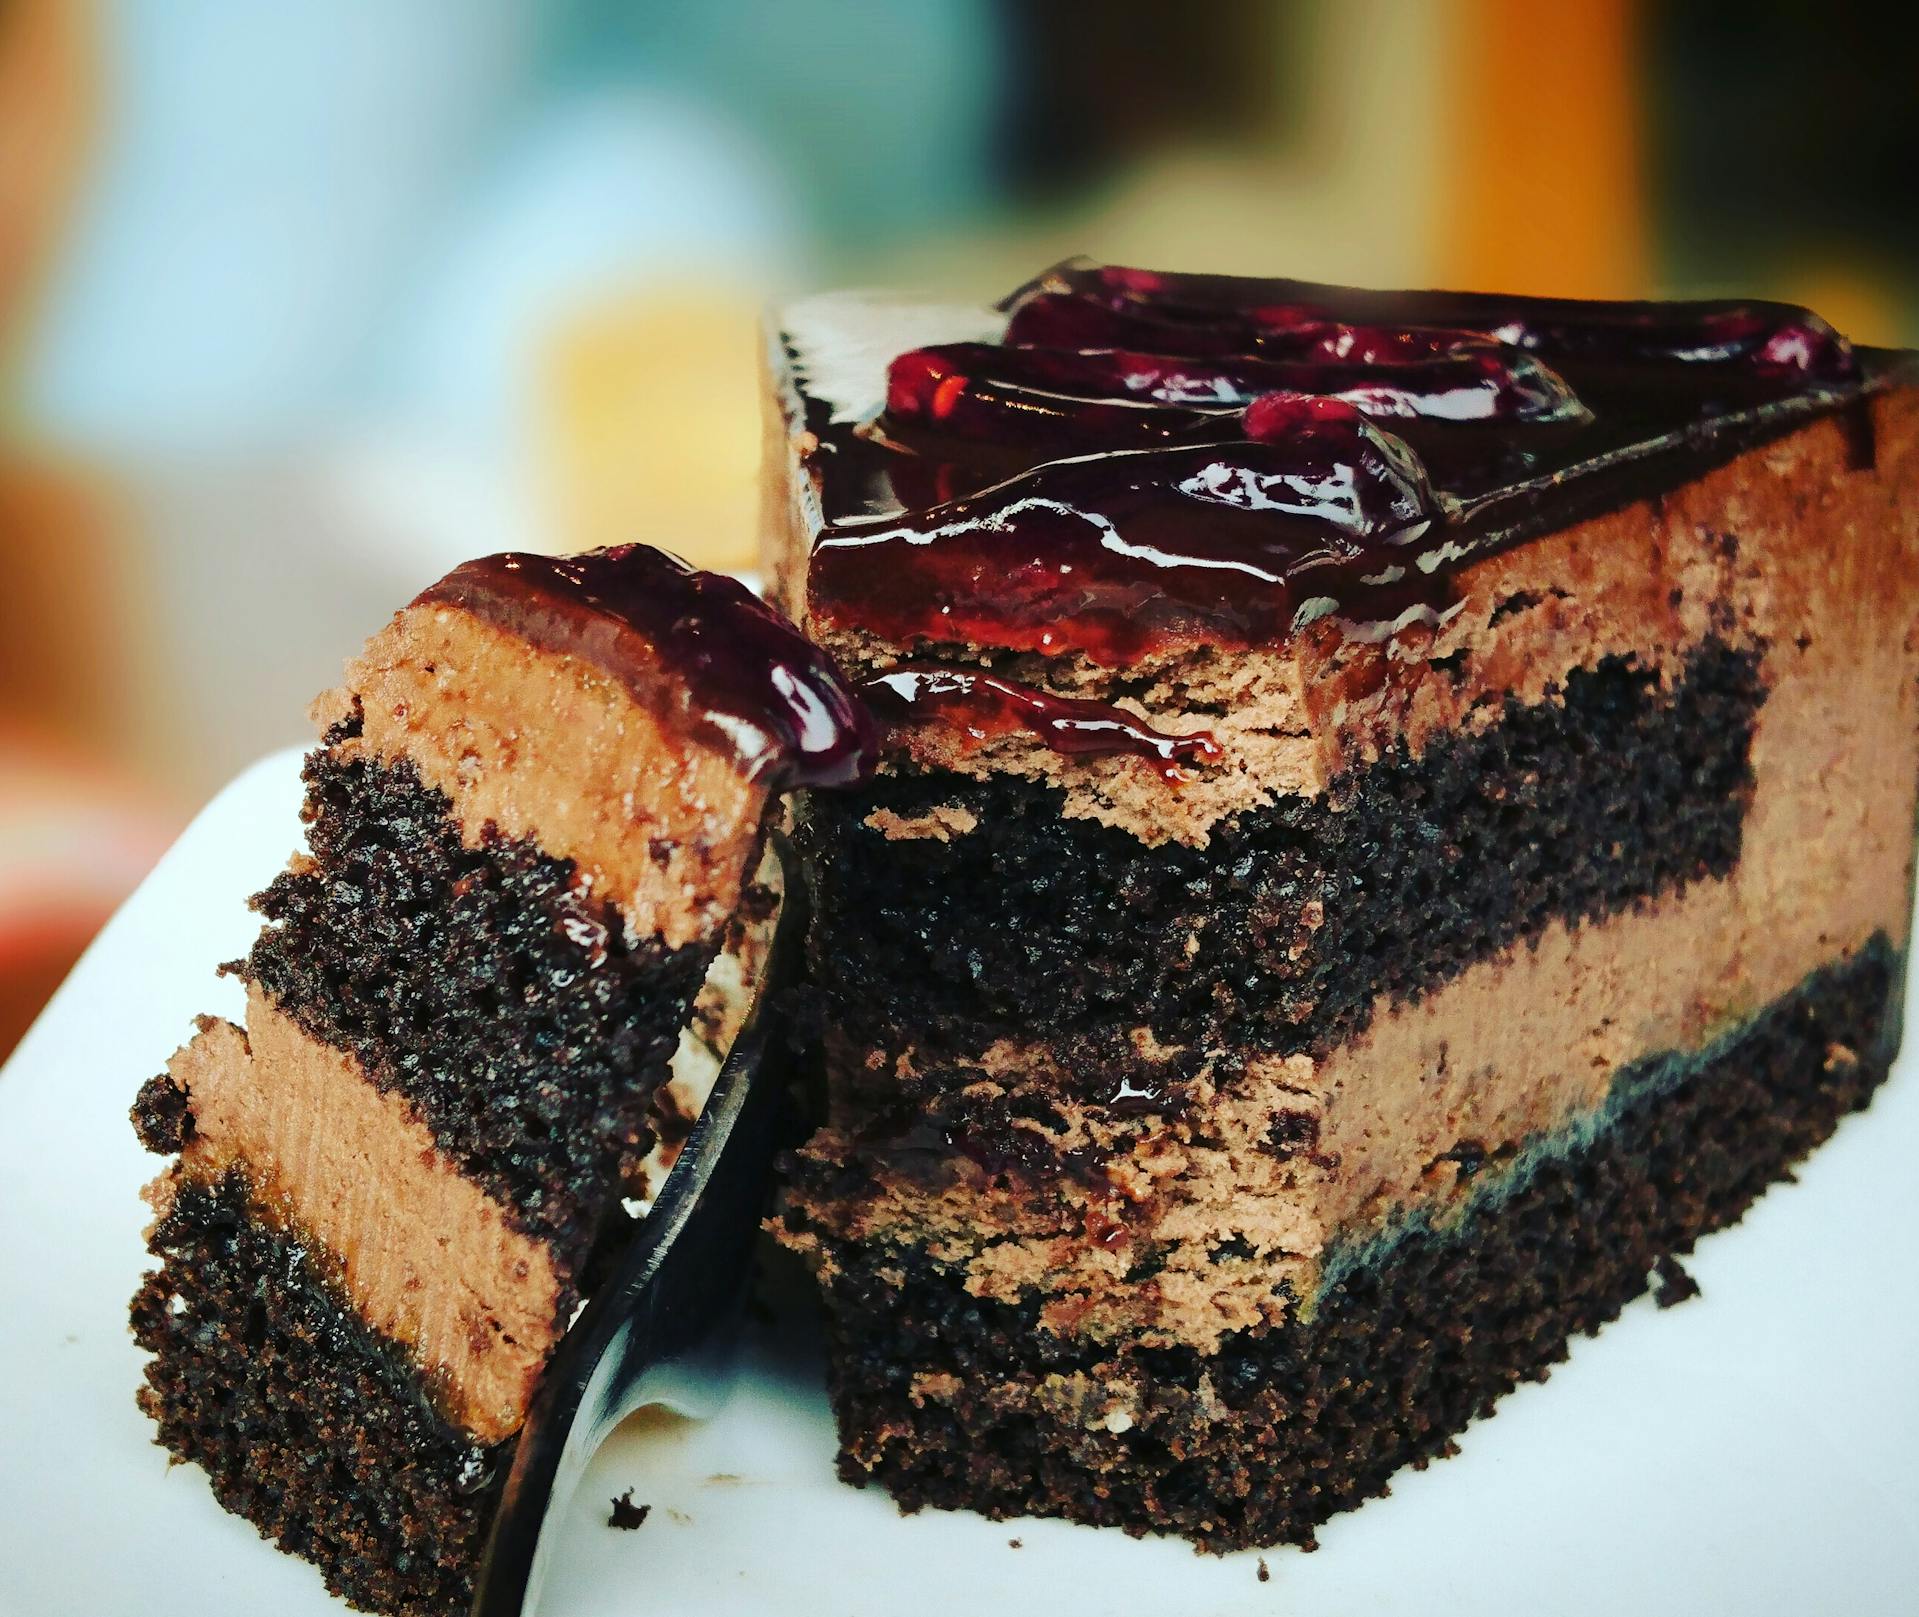 Un pastel cortado en un plato | Fuente: Pexels